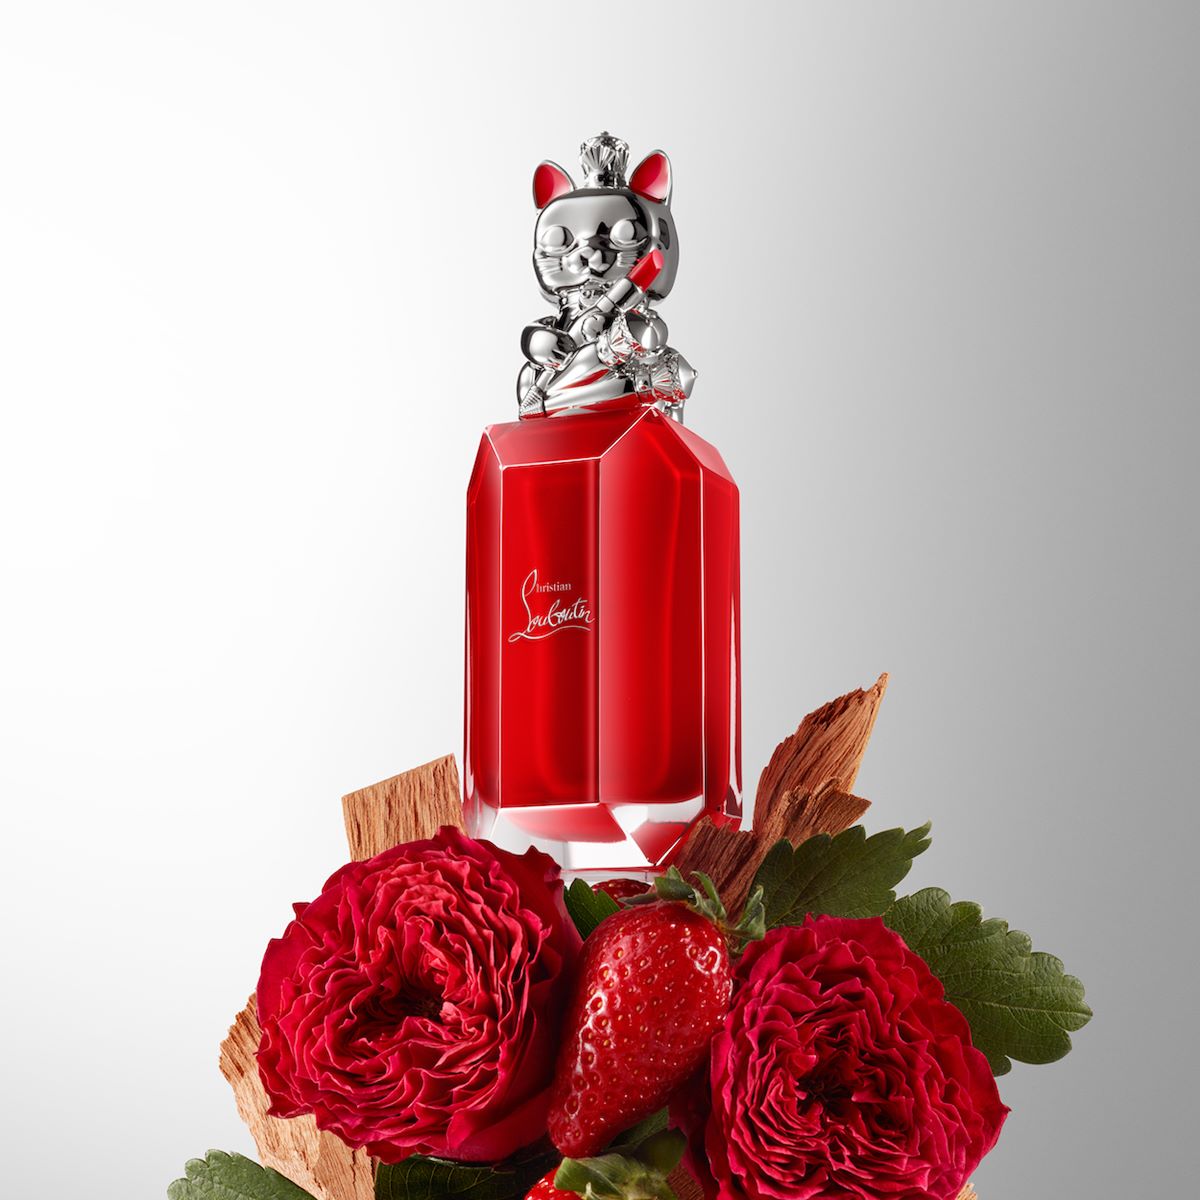 Christian Louboutin releases Loubidoo Rose Eau de Parfum